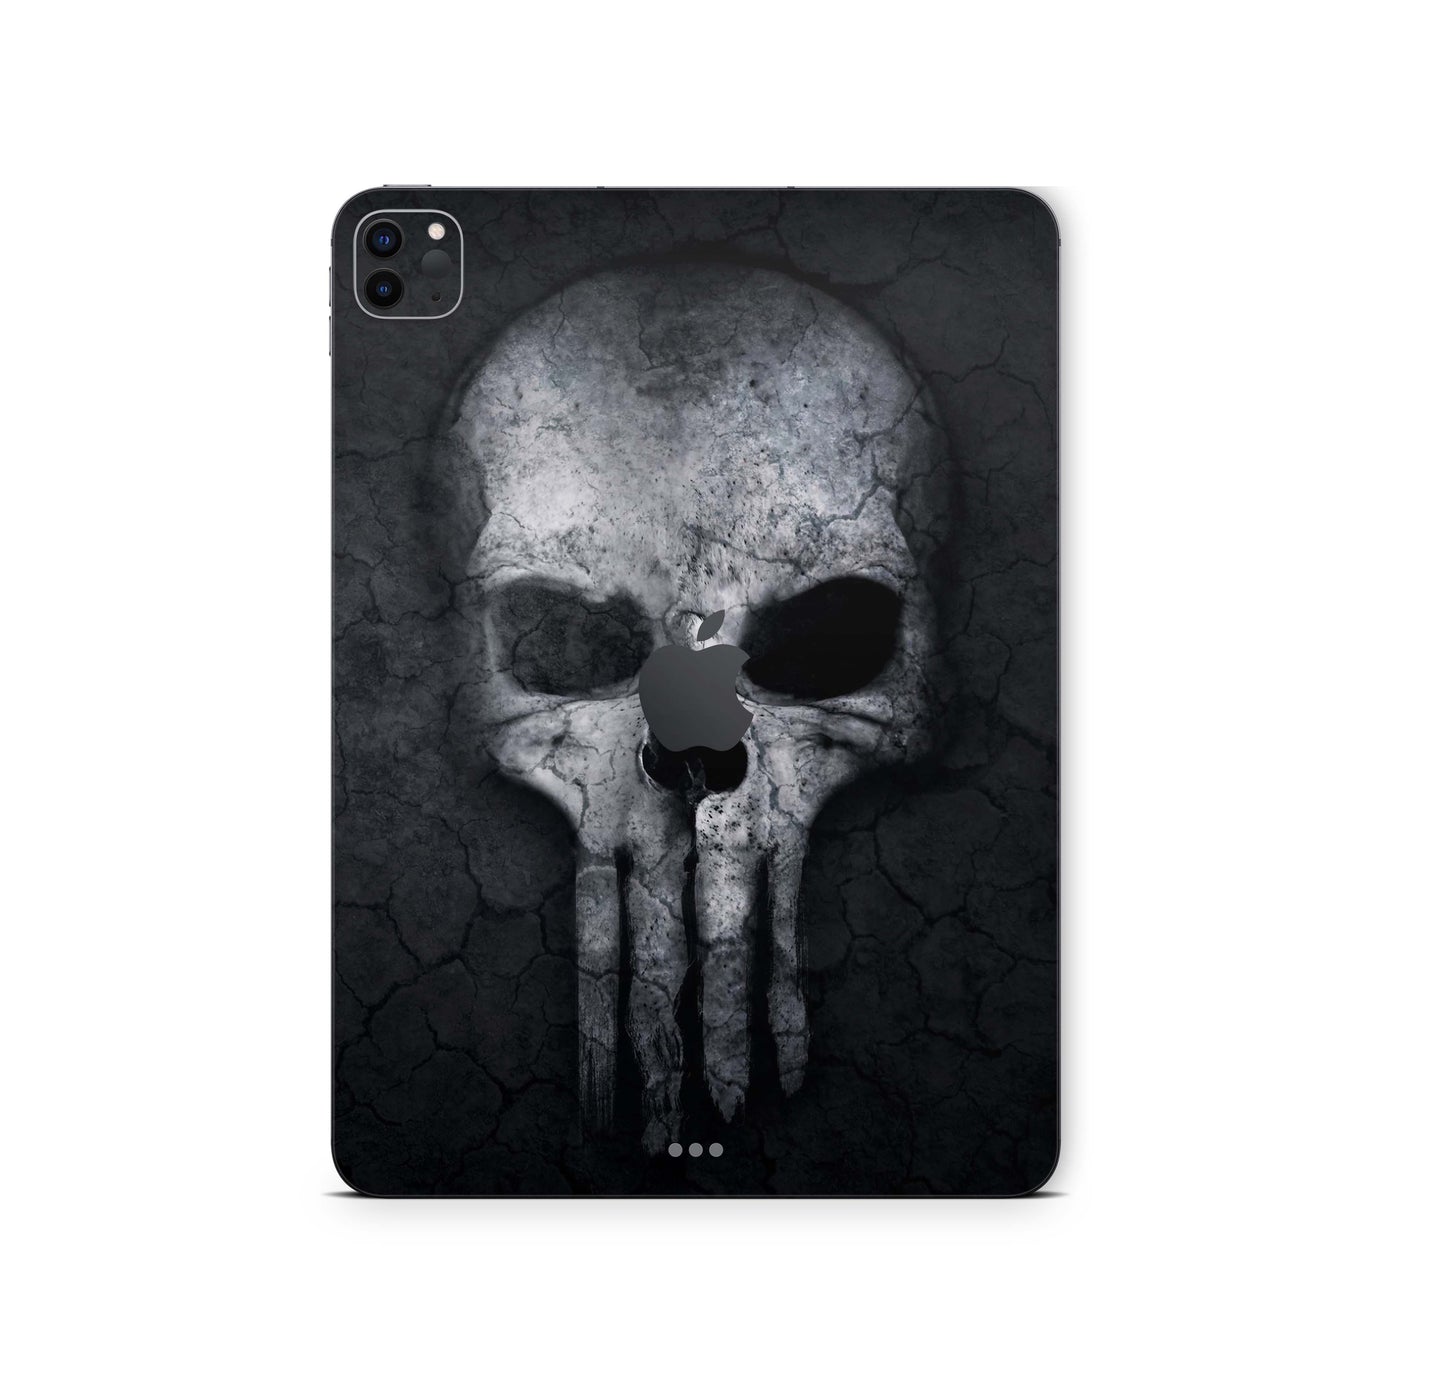 iPad Pro Skin 11" 2.Generation A2228 Design Cover Folie Vinyl Skins & Wraps Aufkleber Skins4u Hard-Skull  